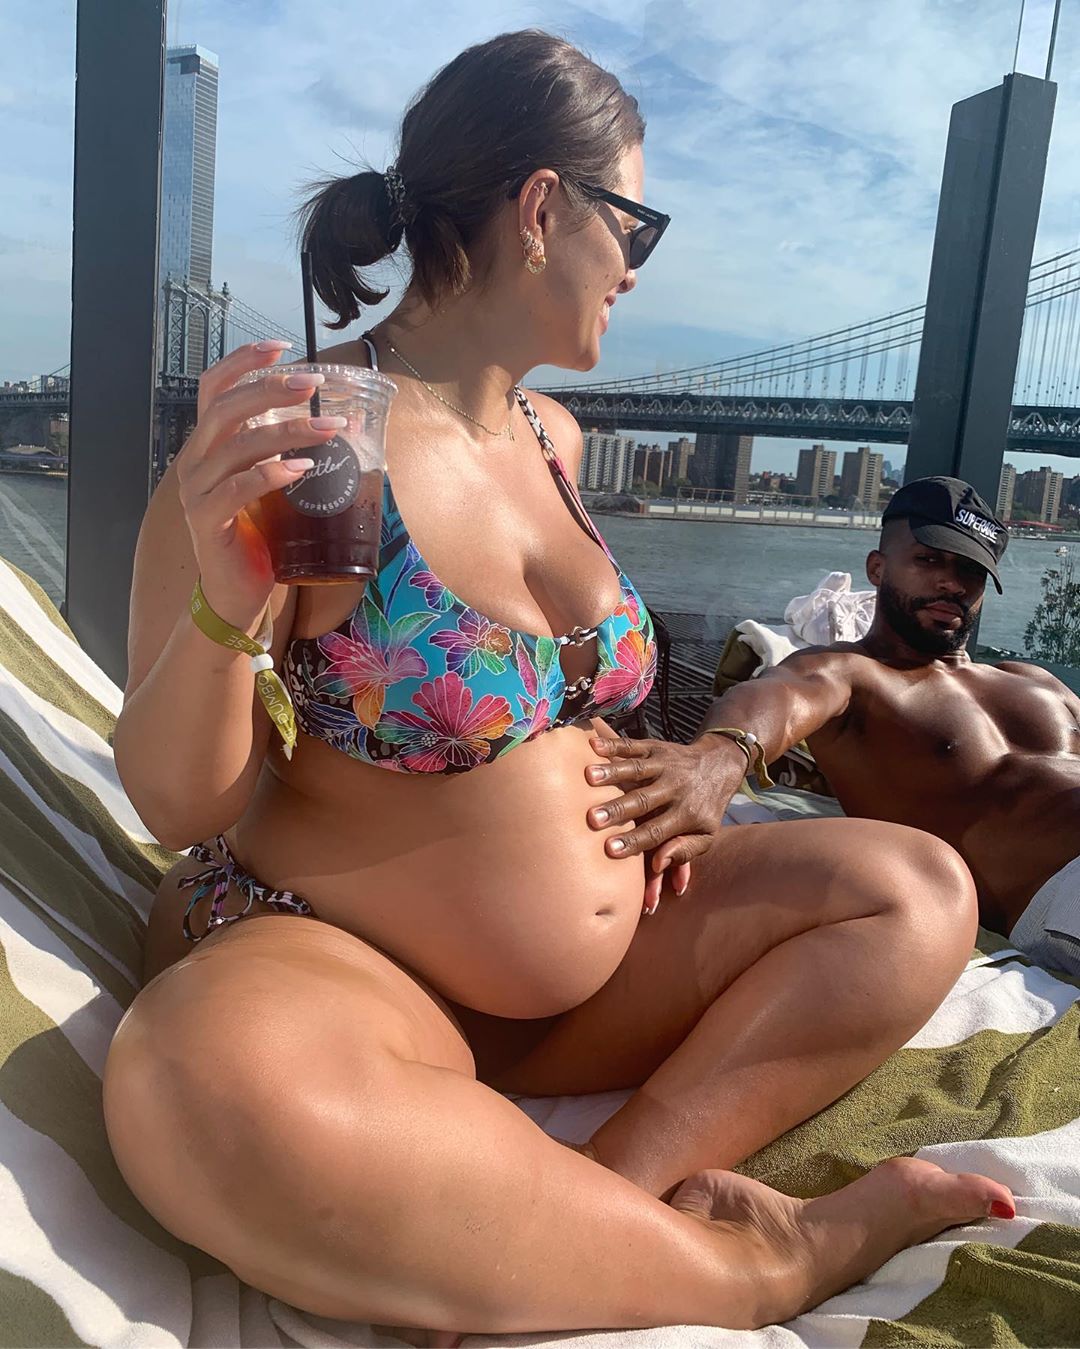 Pregnant Ashley Shows Off Bare Baby Bump in Floral Bikini: Pics